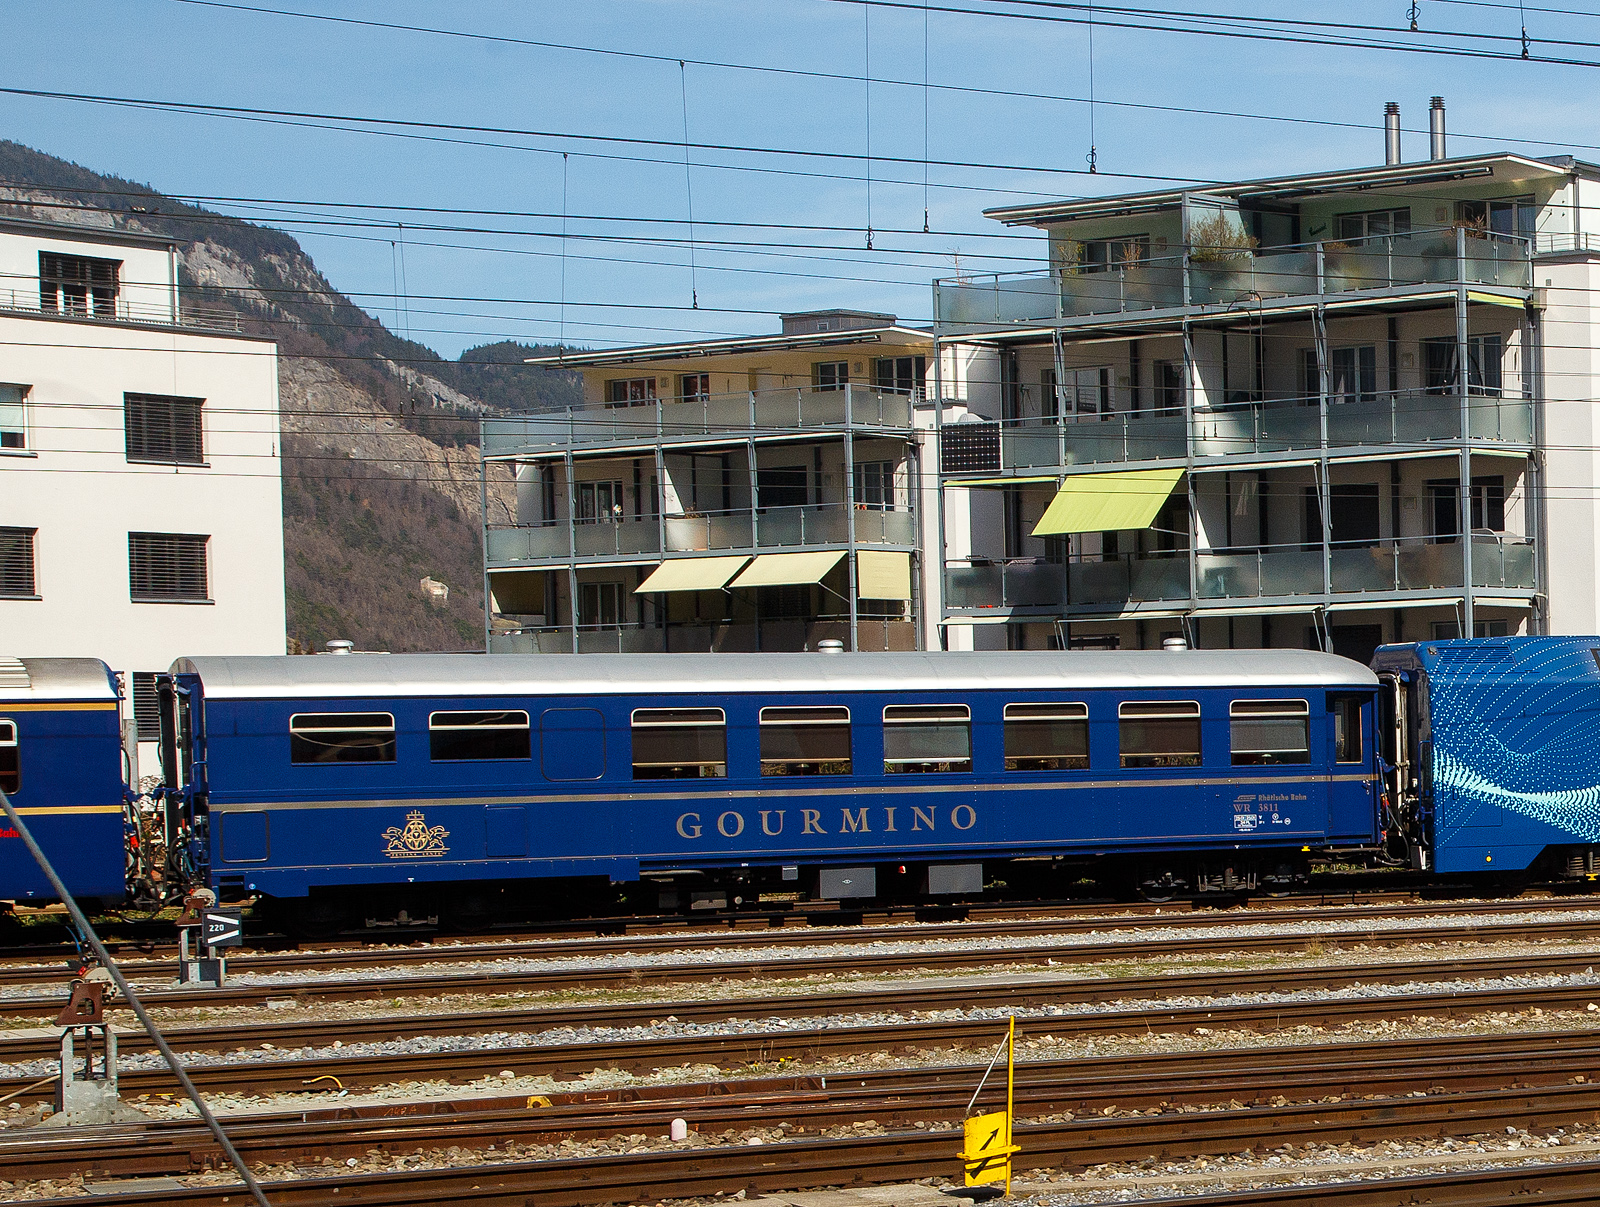 Der RhB Gourmino Speisewagen WR 3811, ex RhB Dr4 3811, ex Mitropa Dr4 11, am 22.03.2023 beim Bahnhof Chur abgestellt.

In den Jahren 1929 und 1930 beschaffte die Mitropa drei als Dr4 10-12 bezeichnete Speisewagen fr den Einsatz in den Luxuszgen der Rhtischen Bahn. Diese Fahrzeuge liefen nicht nur im Glacier Express, sondern auch im Engadin Express und auf Verbindungen nach Davos. Lieferant war die Schweizerische Waggons- und Aufzgefabrik Schlieren (SWS). 1949 ersteigerte die RhB die Speisewagen von der Mitropa.
Die Bezeichnung Dr4 10-12 wurde 1956 in Dr4 3810-3812 und spter in WR 3810-3812 gendert.

WR 3812 wurde 1974 versuchsweise modernisiert und mit Mikrowellenherden ausgerstet. WR 3810-3811 hingegen wurden 1982 bzw. 1983 als nostalgische Speisewagen hergerichtet und mit einer neuen Kcheneinrichtung versehen, die eine Zubereitung frischer Speisen gestattet.

1996 wurde WR 3812 generalberholt, wobei die RhB auch die Inneneinrichtung weitgehend in den Originalzustand zurckversetzte. Bei dieser Gelegenheit tauschte der Wagen sein rotes gegen ein knigsblaues Farbkleid mit groem  Gourmino -Schriftzug ein. Diesen aufflligen Farbton erhielten spter ebenfalls WR 3810-3811. Alle drei Wagen wurden inzwischen erneut umlackiert und prsentieren sich heute im noblen Blauton des Alpine Classic Pullman Express (ACPE). Der Gourmino fhrt meist auf der spektakulren Albulalinie zwischen Chur und St. Moritz.

TECHNISCHE DATEN:
Baujahr und Hersteller: 1929 / SWS
Spurweite: 1.000 mm
Anzahl der Achsen: 4
Lnge ber Puffer: 16.440 mm
Sitzpltze: 36
Eigengewicht: 25,0 t
zulssige Geschwindigkeit: 90 km/h
Lauffhig: StN (Stammnetz) / MGB (Matterhorn Gotthard Bahn)